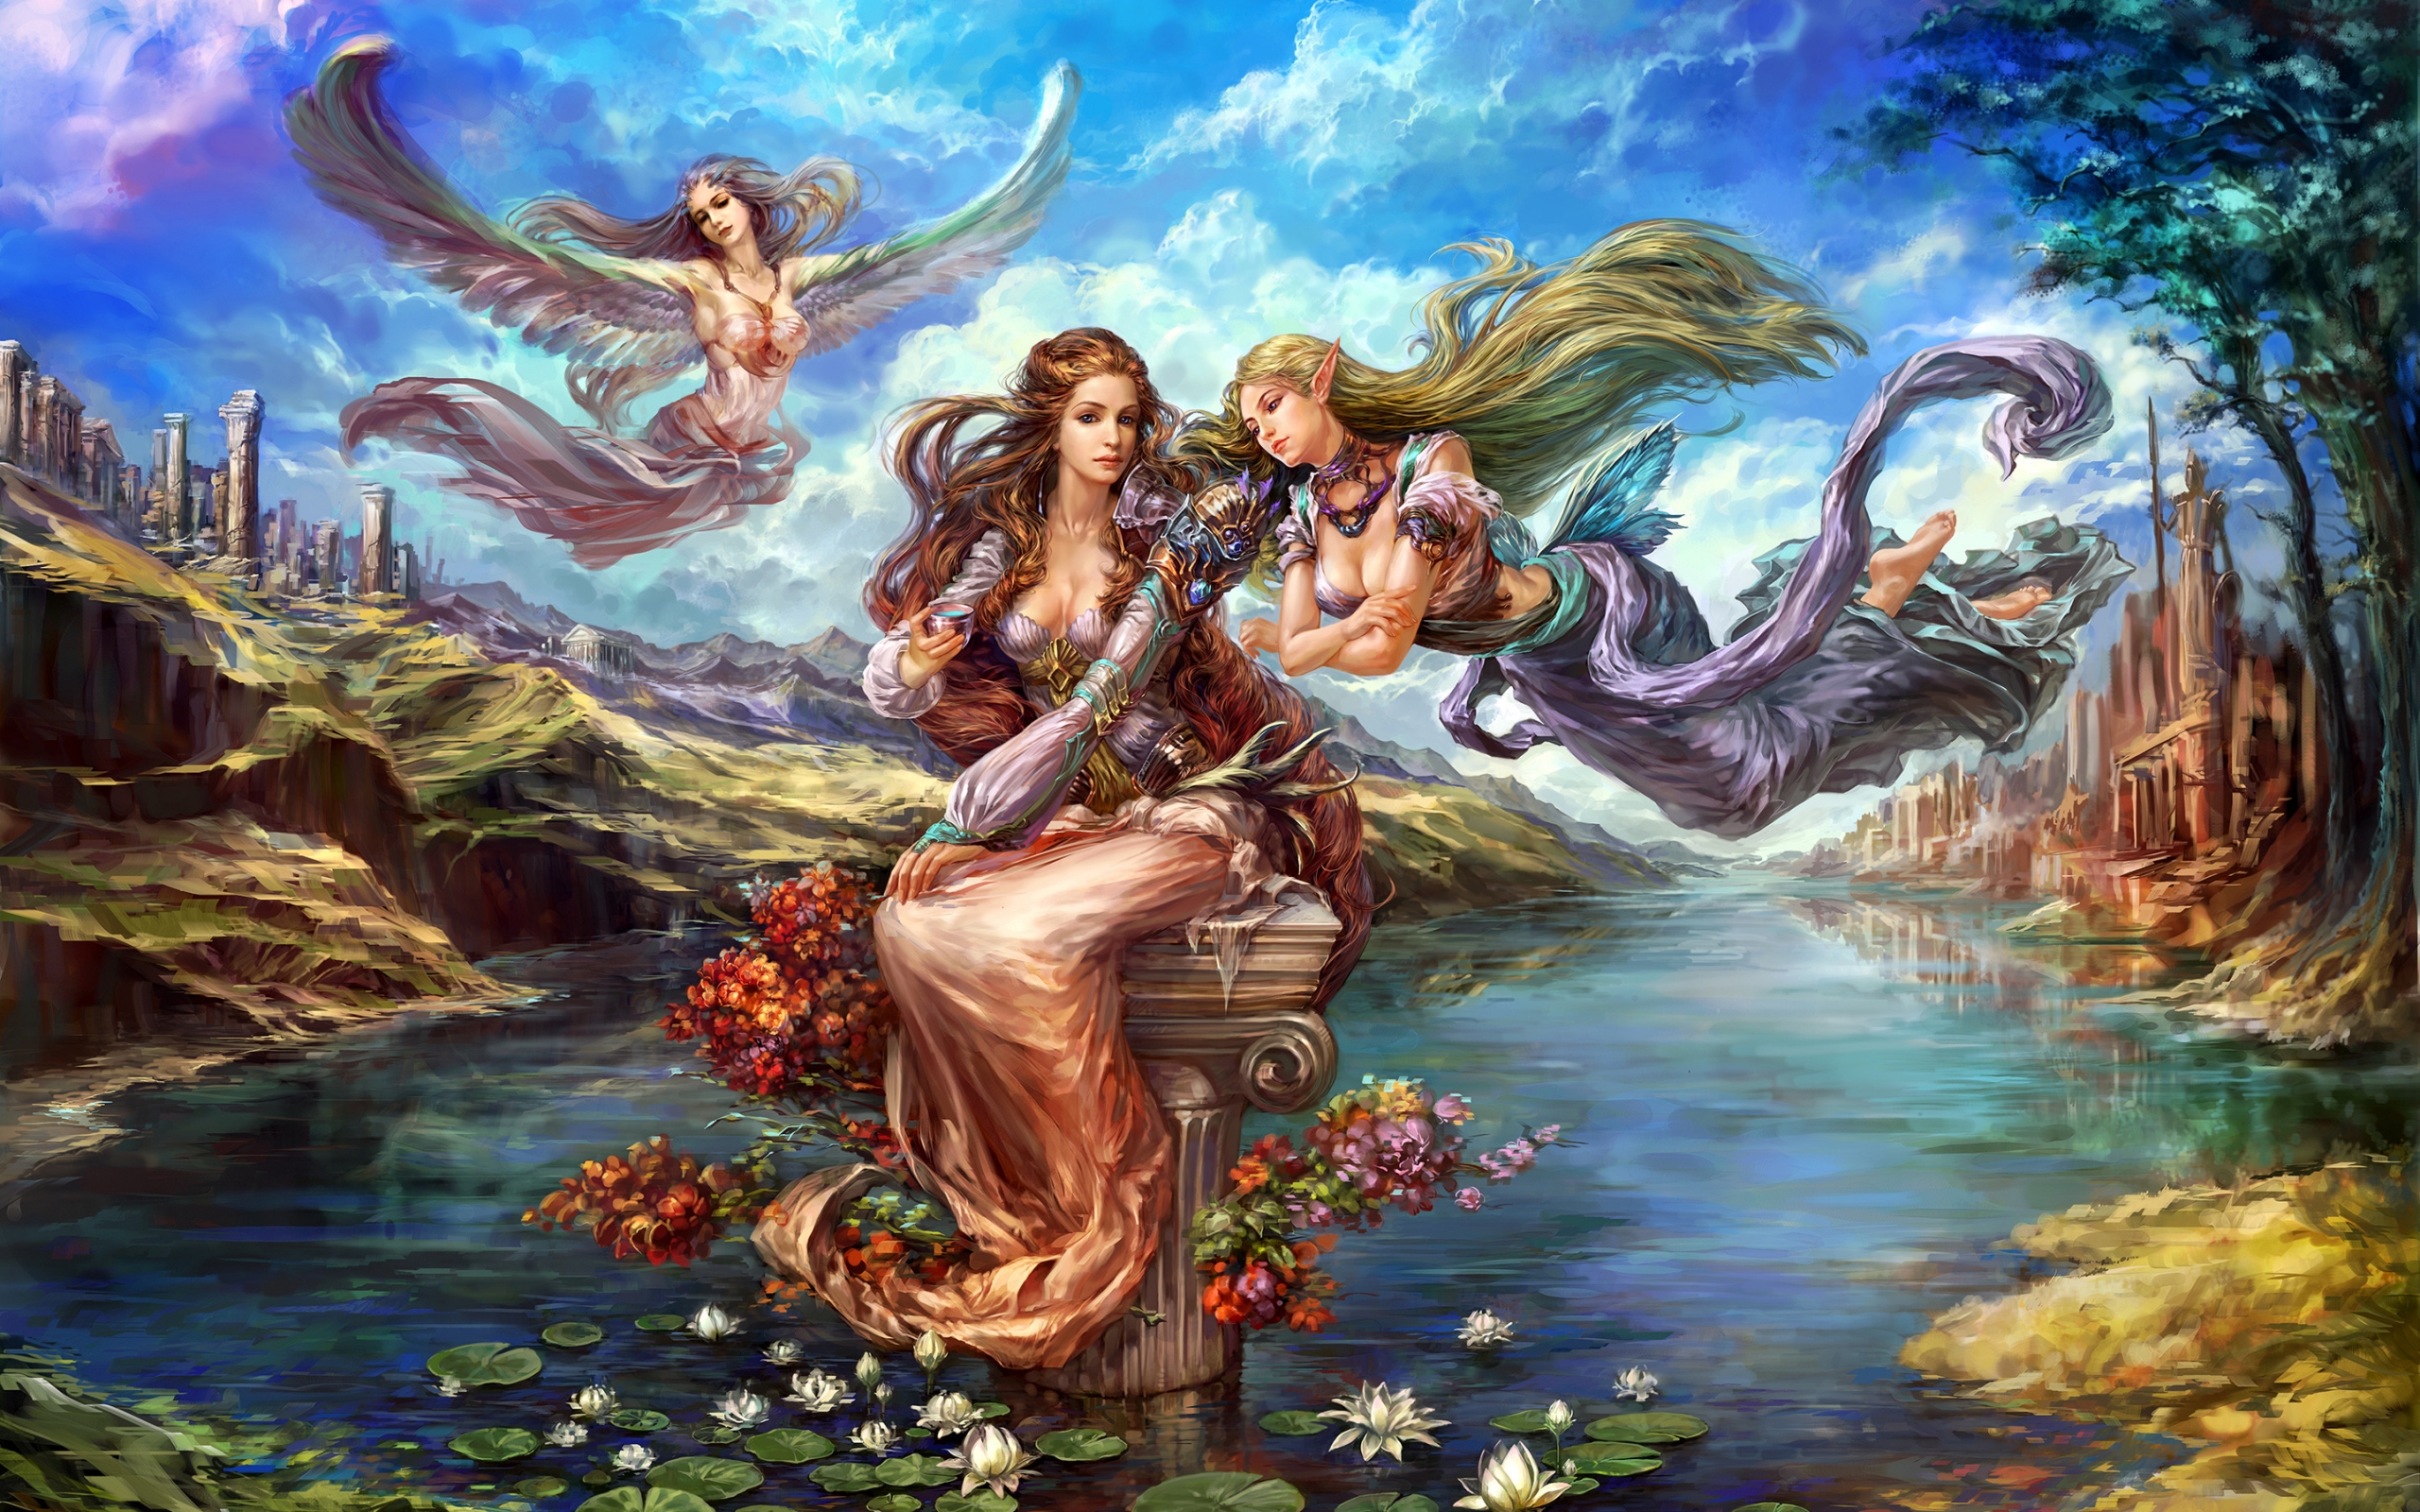 Fantasy Elves from Forsaken World for 2560 x 1600 widescreen resolution